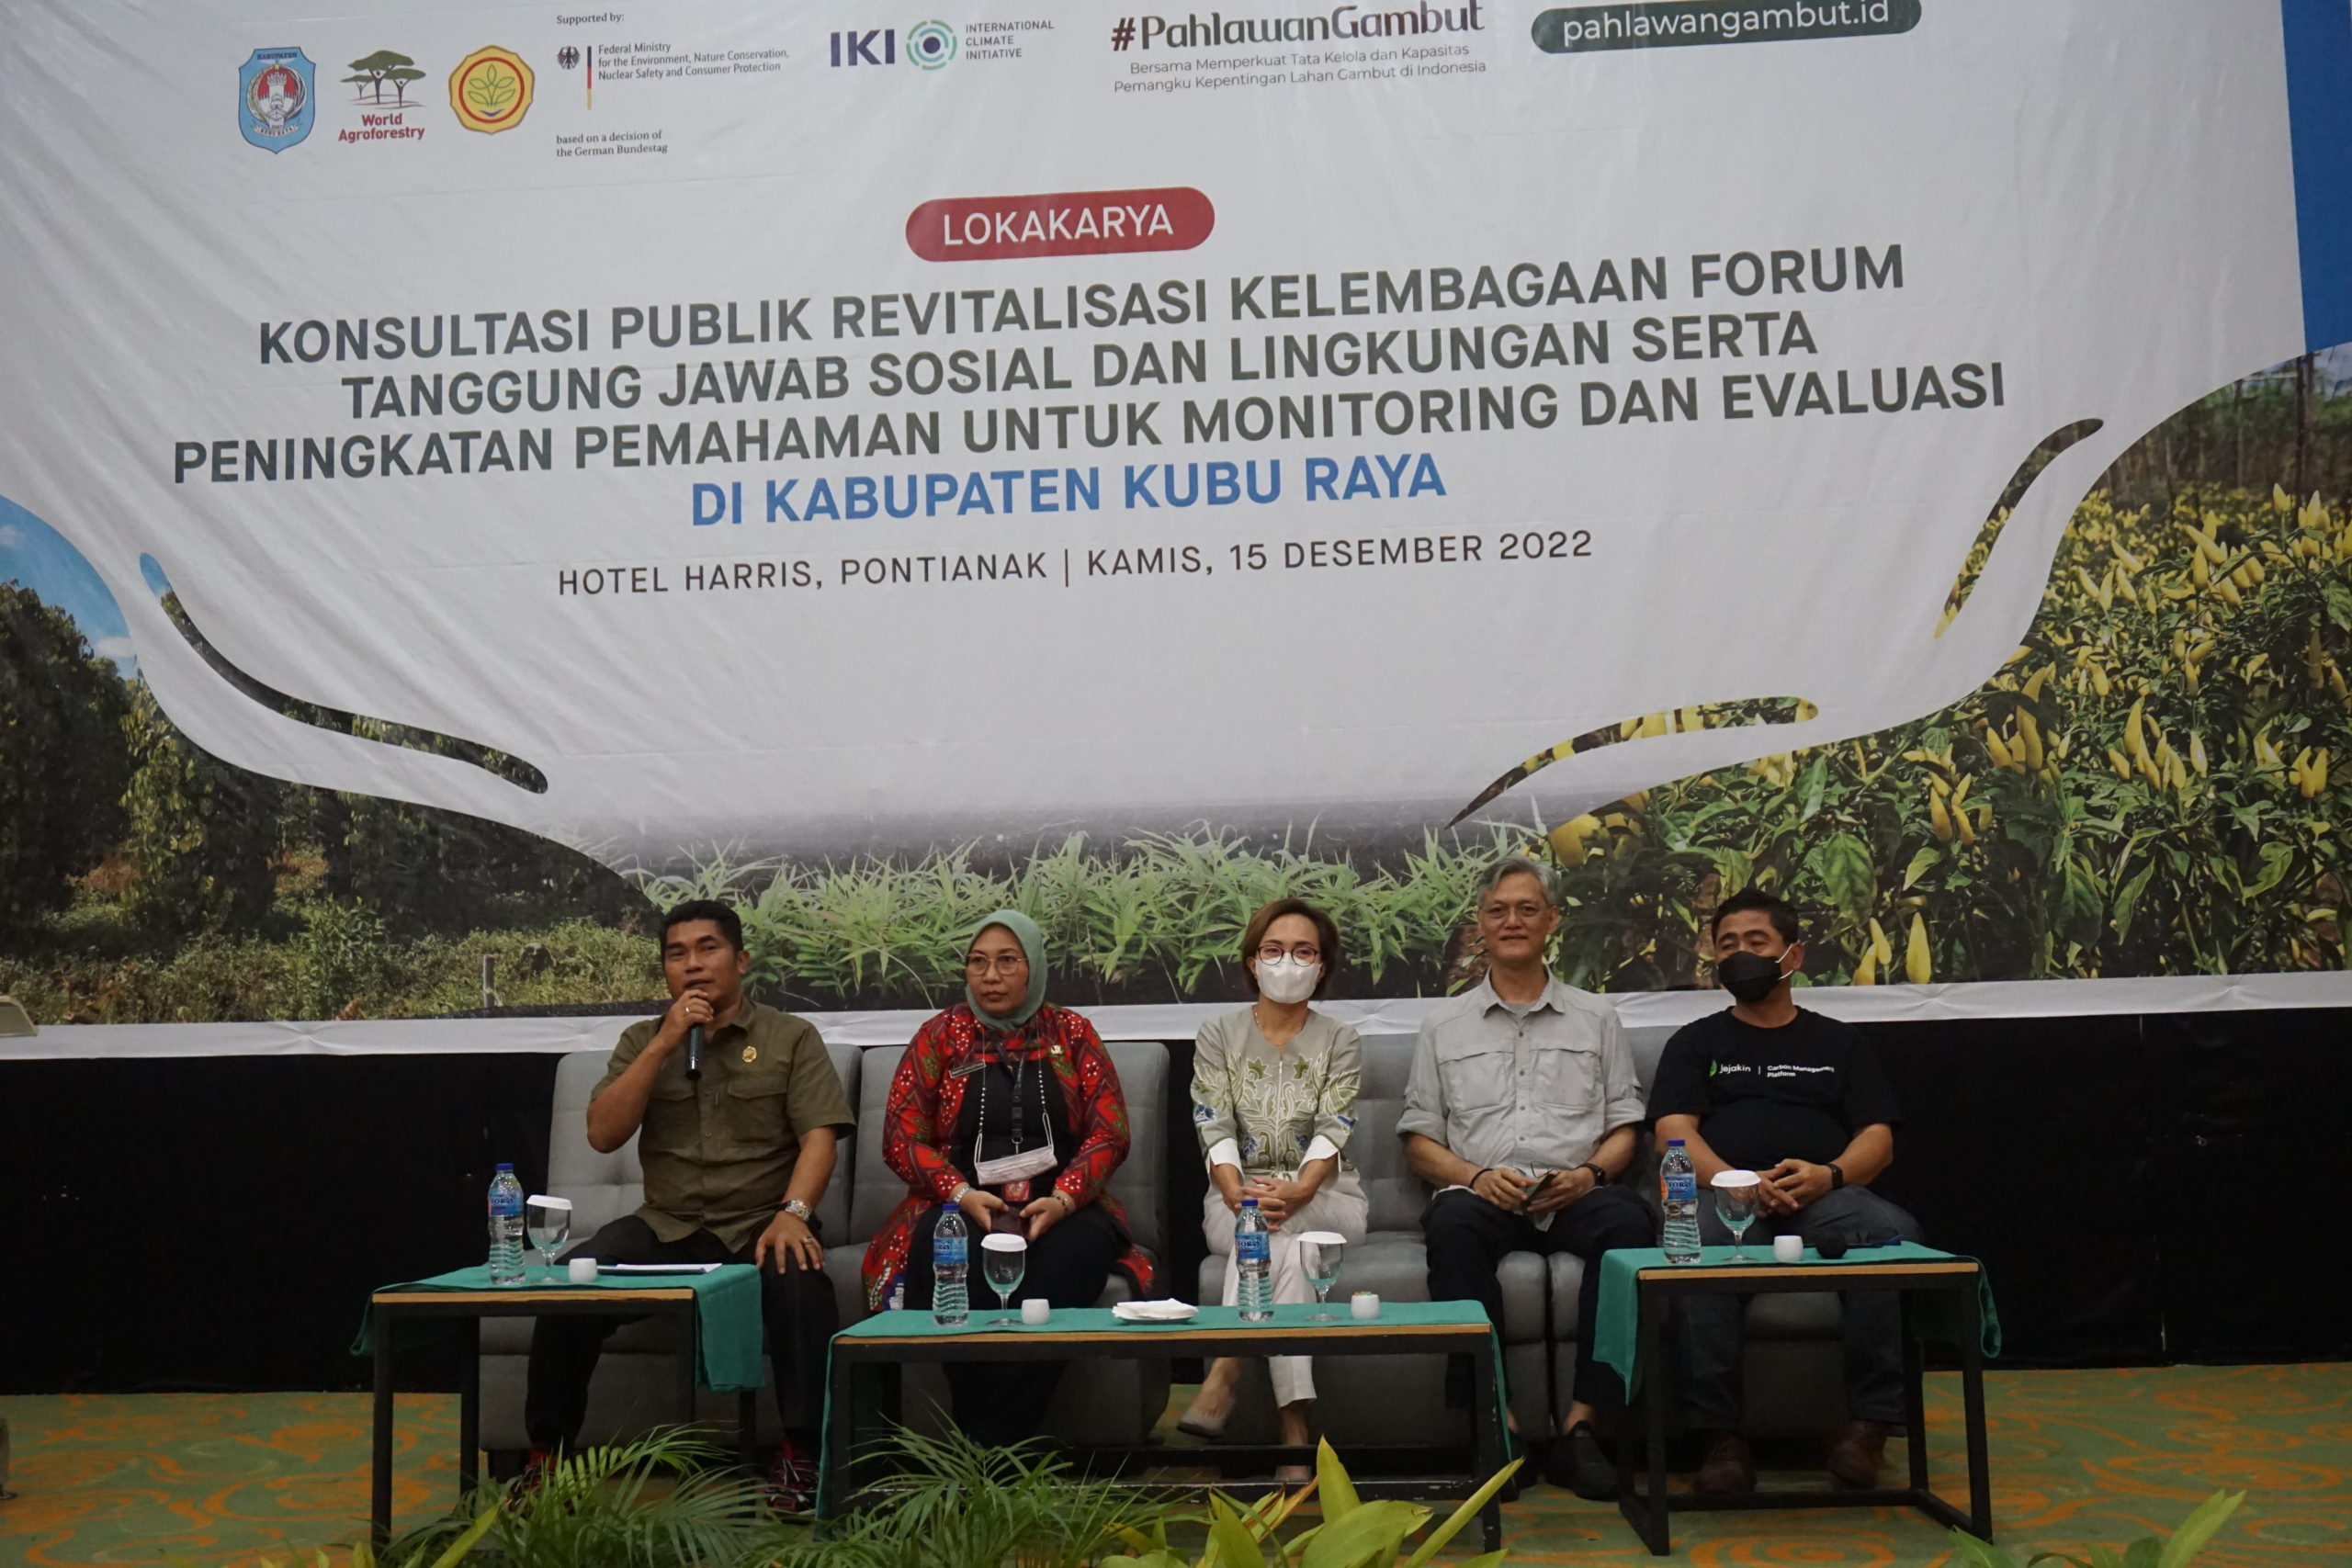 Aksi nyata pelestarian dan konservasi lingkungan Gambut Kubu Raya lewat TJSL